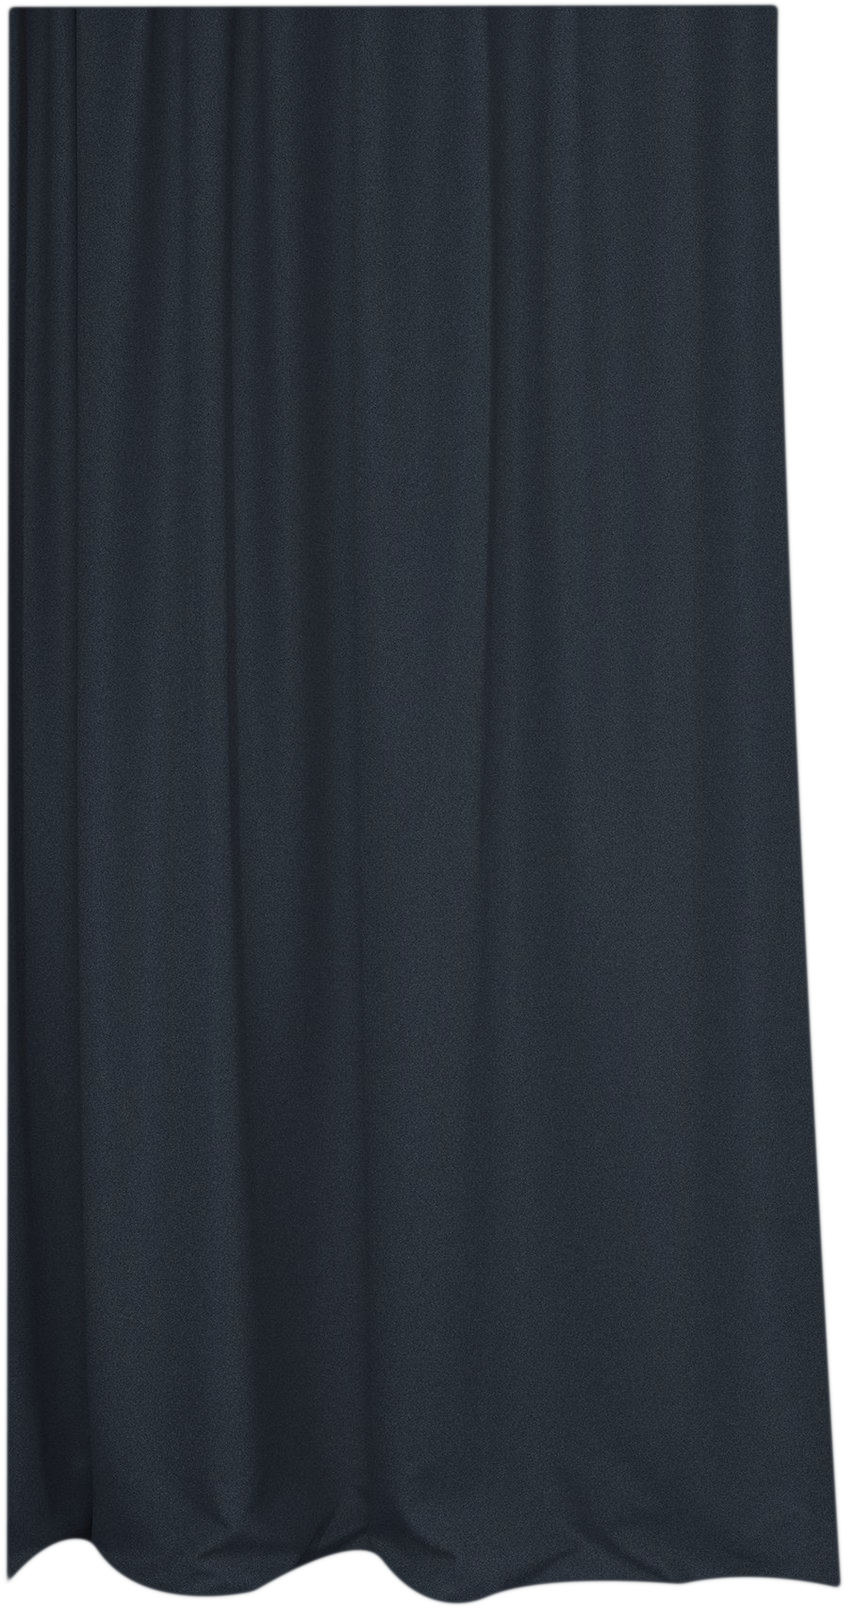 Vorhang Hangover Dimout in Blau präsentiert im Onlineshop von KAQTU Design AG. Vorhang ist von ZigZagZurich